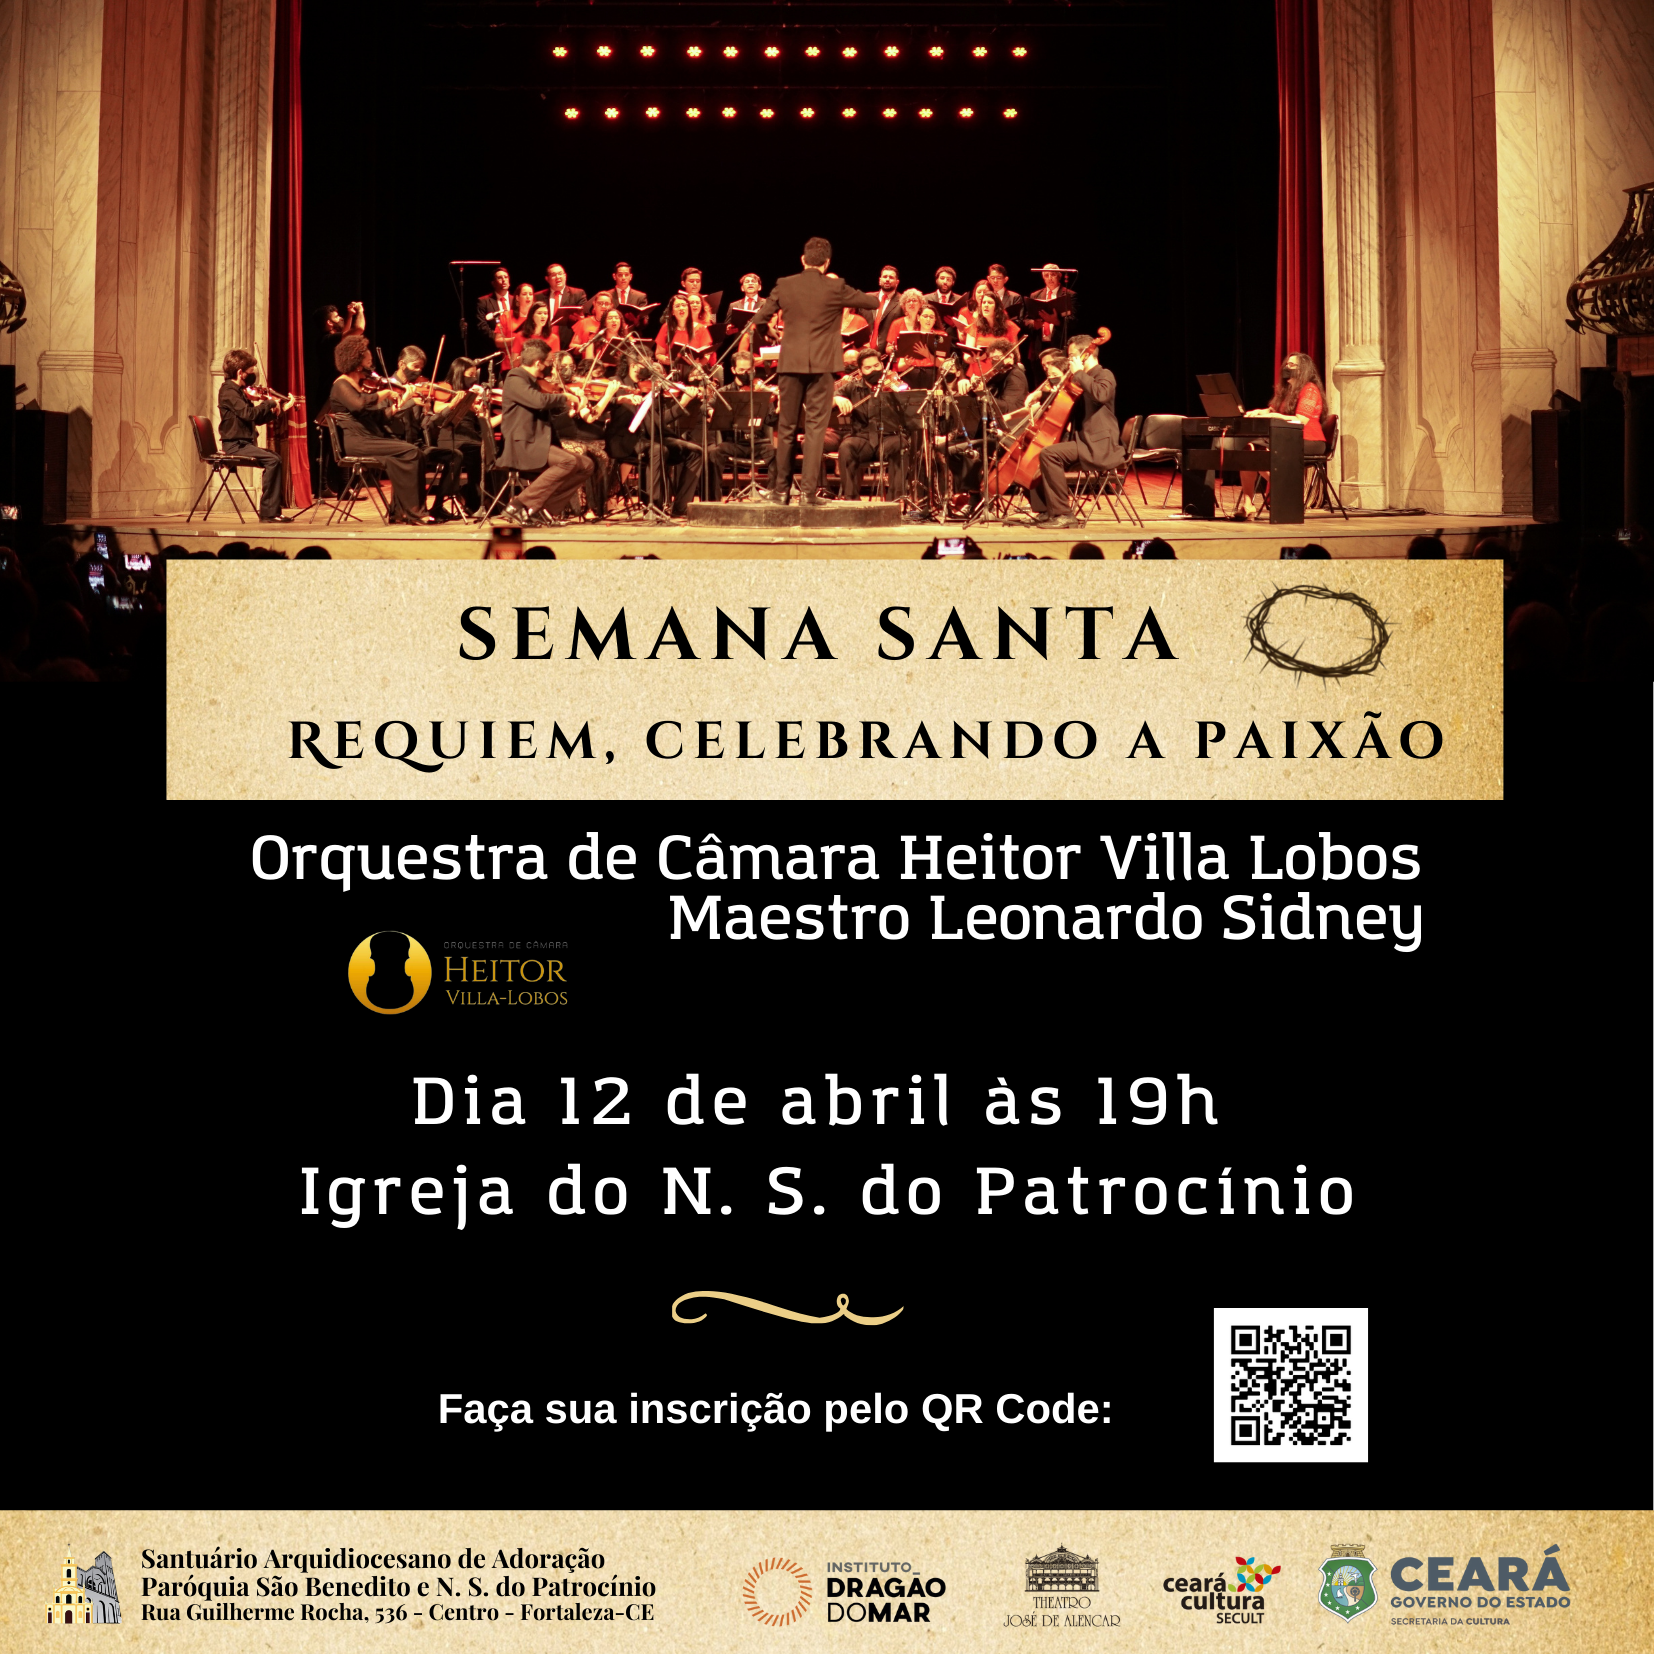 Celebrando a Semana Santa com o Concerto – Requiem, celebrando a Paixão – 12/04. Participe!